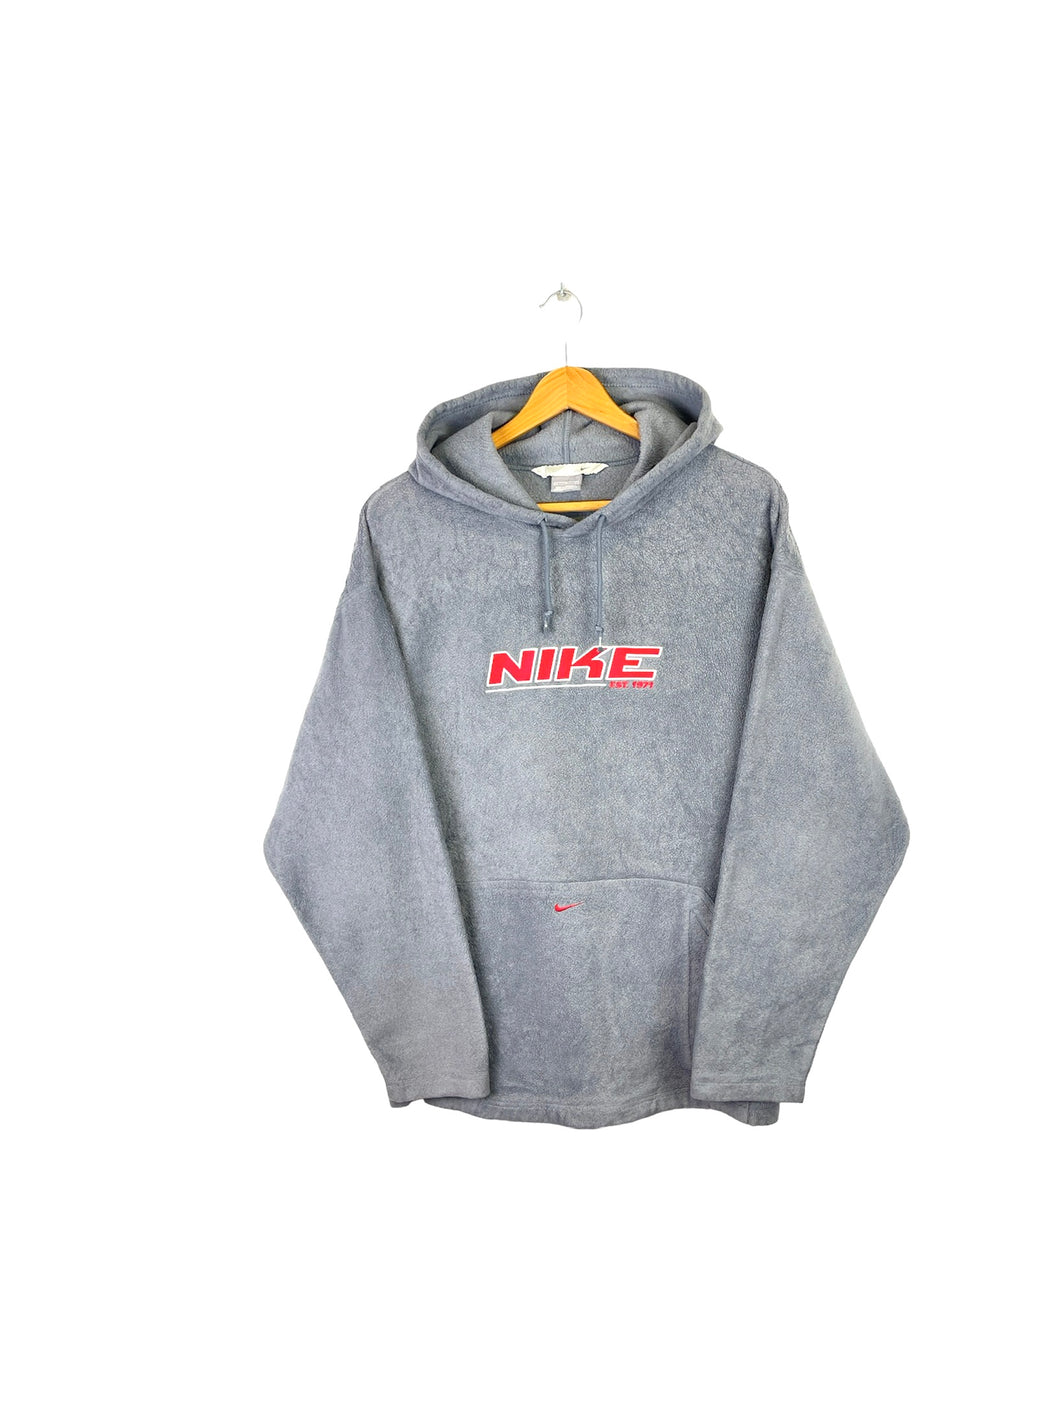 Nike Fleece Sweatshirt - XLarge